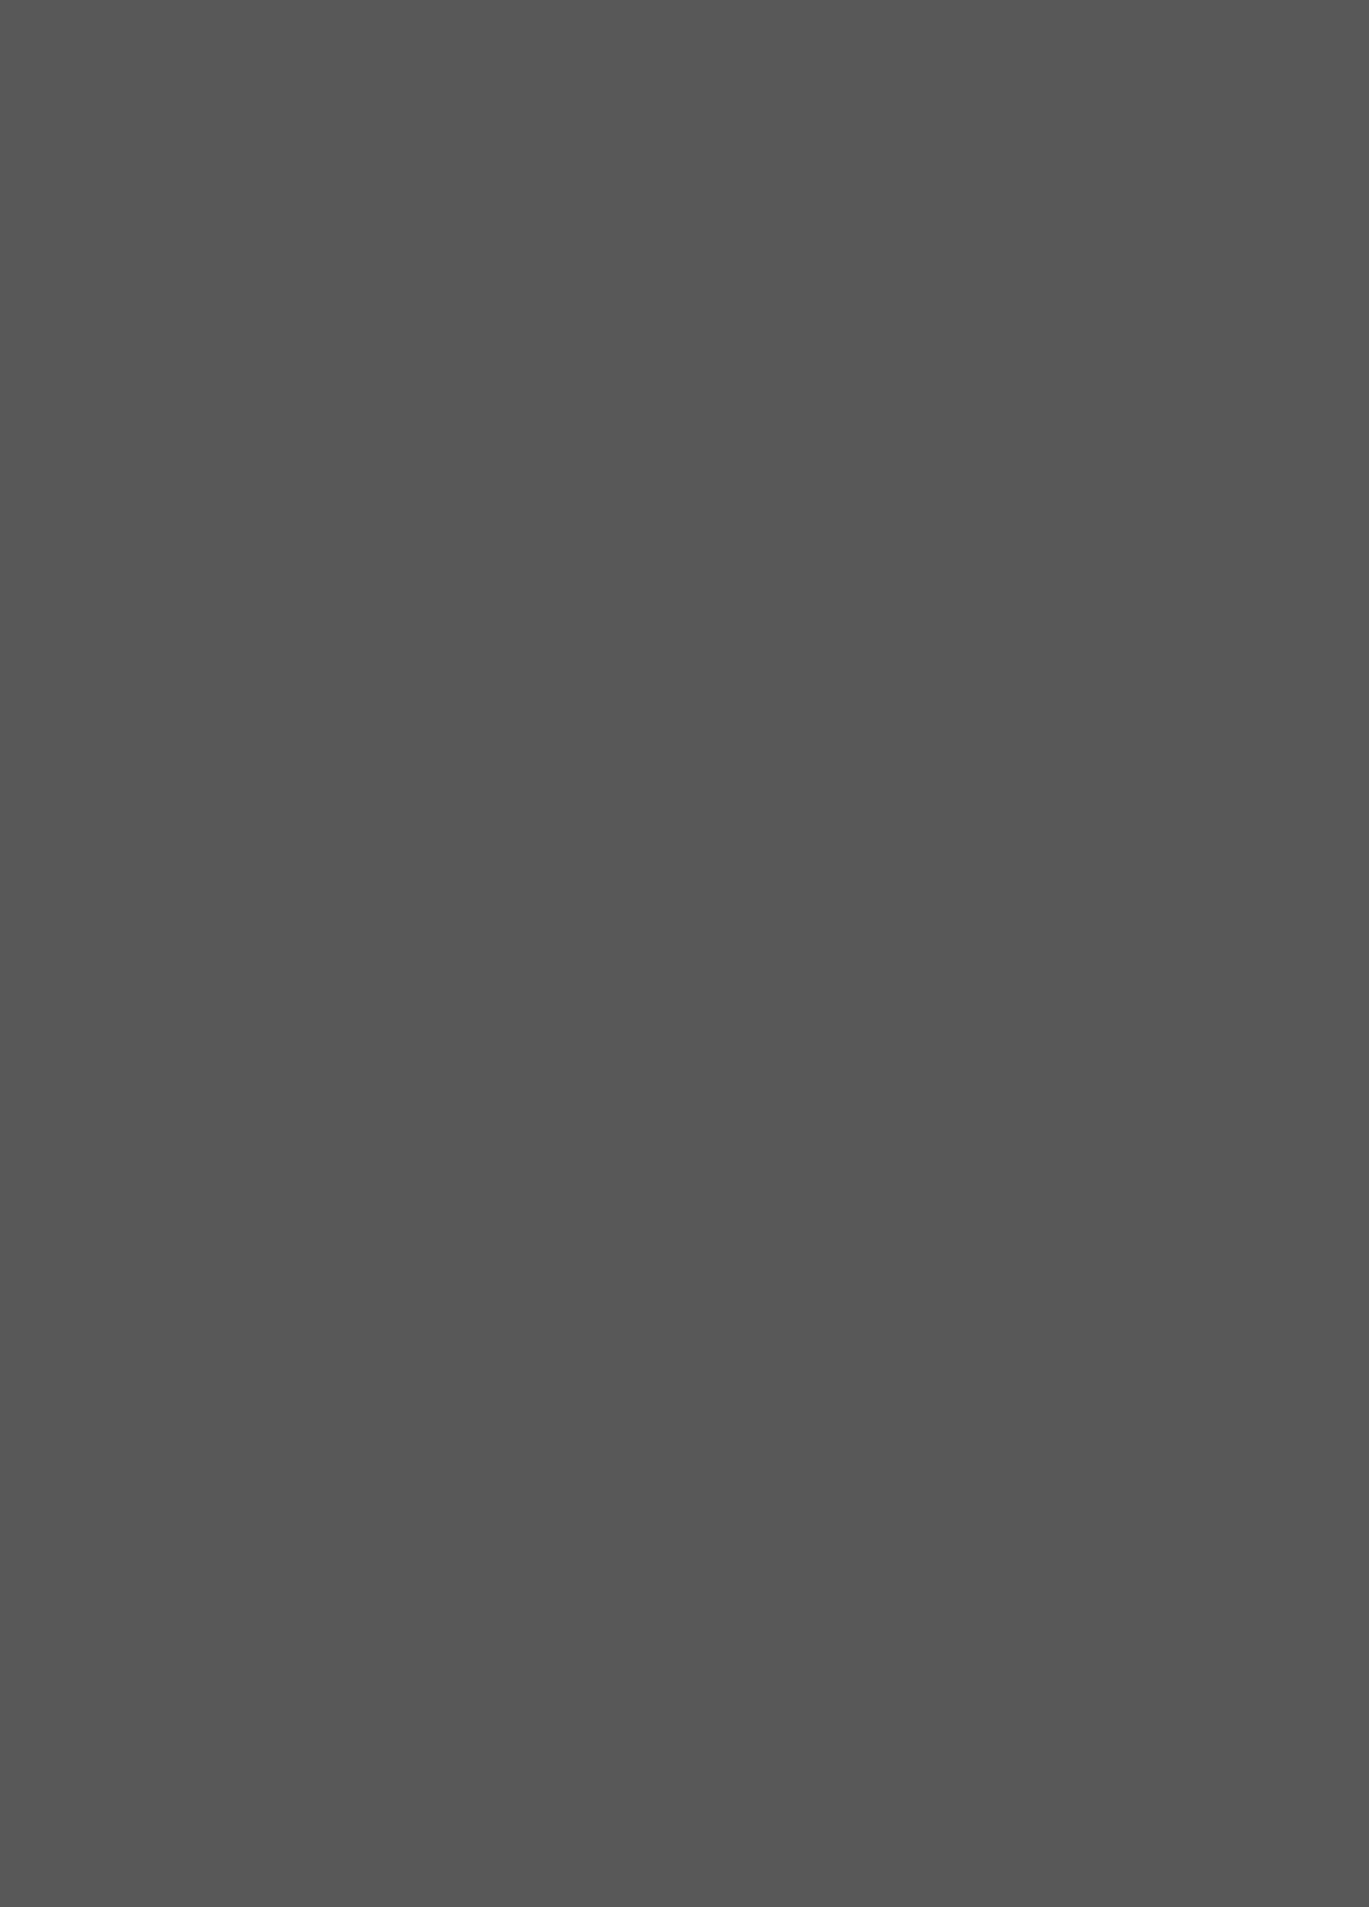 Александр Родченко. Варвара Степанова в платье из ткани по собственному эскизу, выпущенному на Первой ситценабивной фабрике. Фотография: jewish-museum.ru